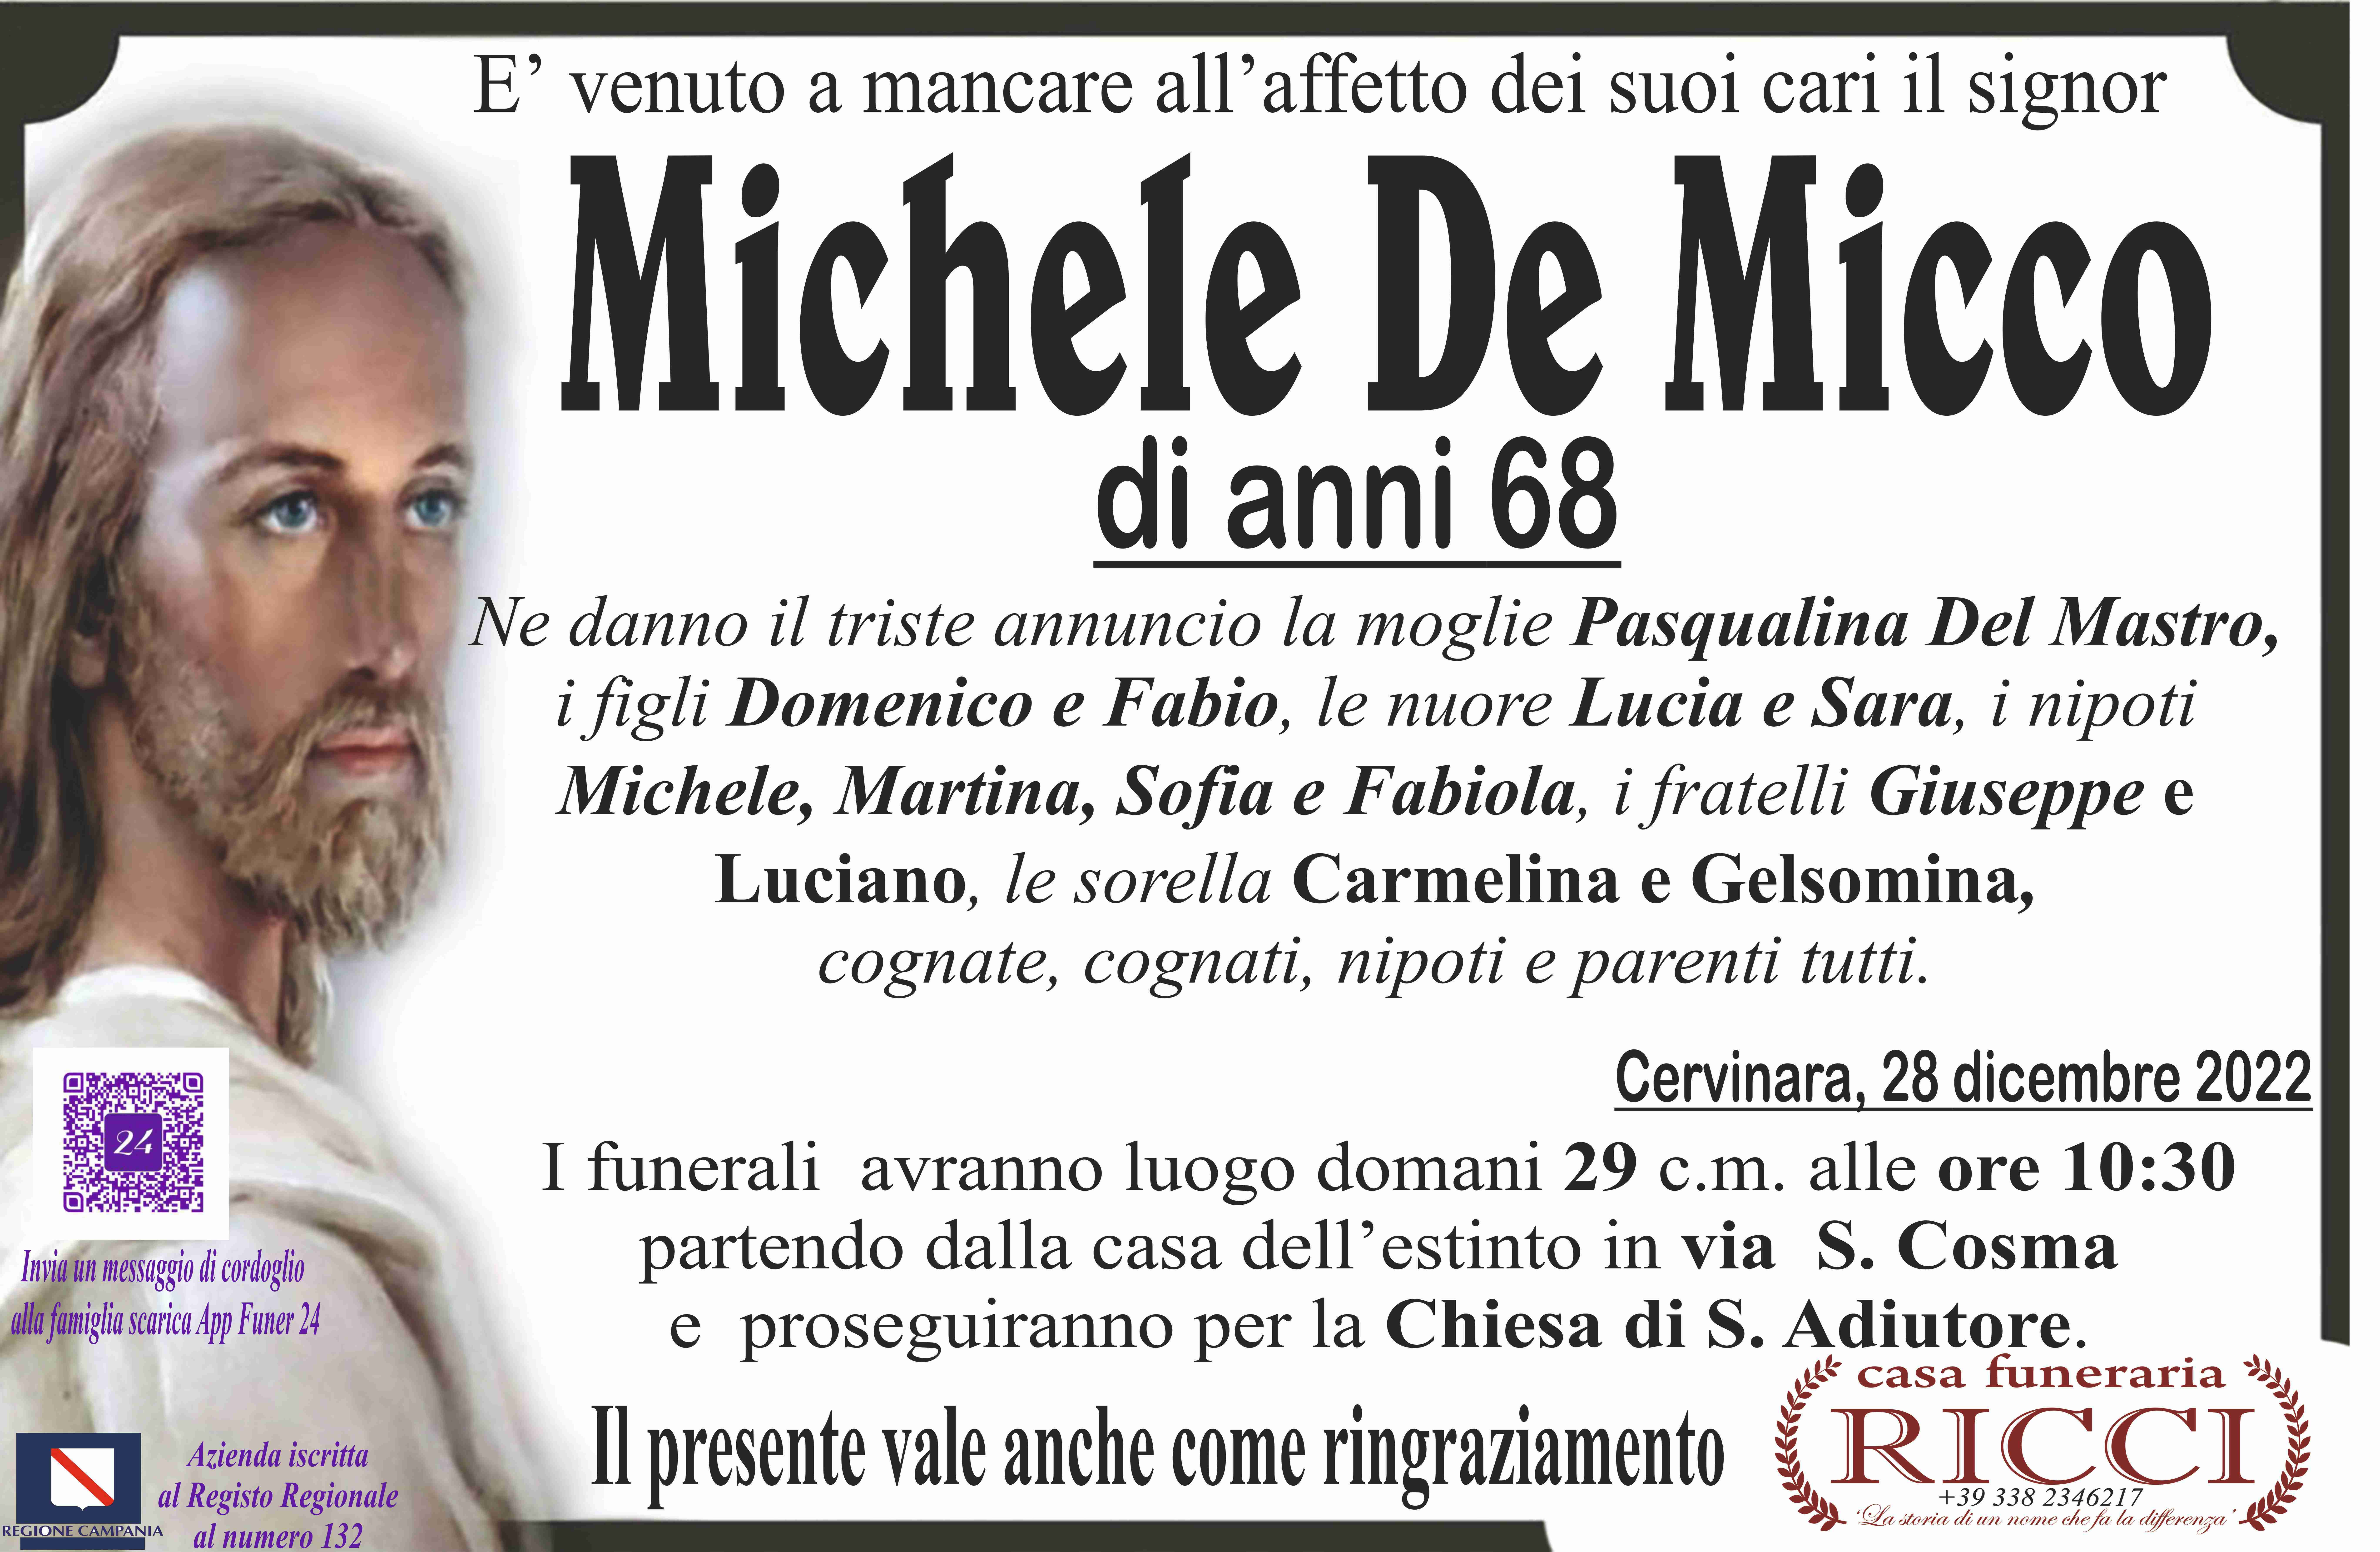 Michele De Micco